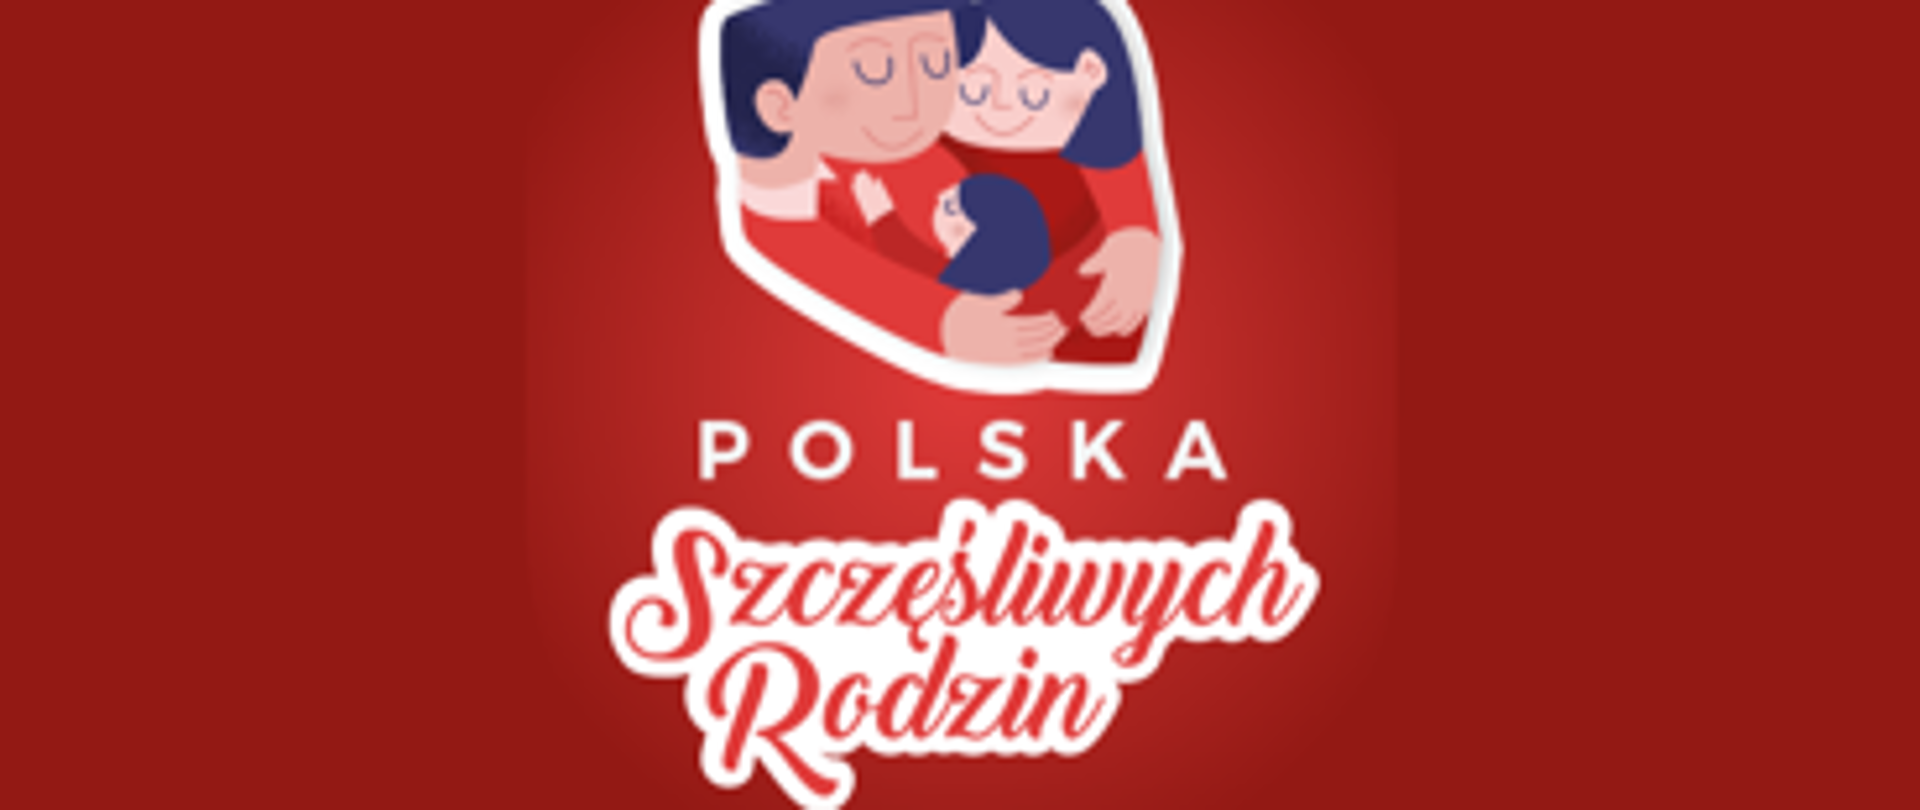 Polska szczęśliwych rodzin. Po kliknięciu nastąpi przekierowanie na stronę projektu